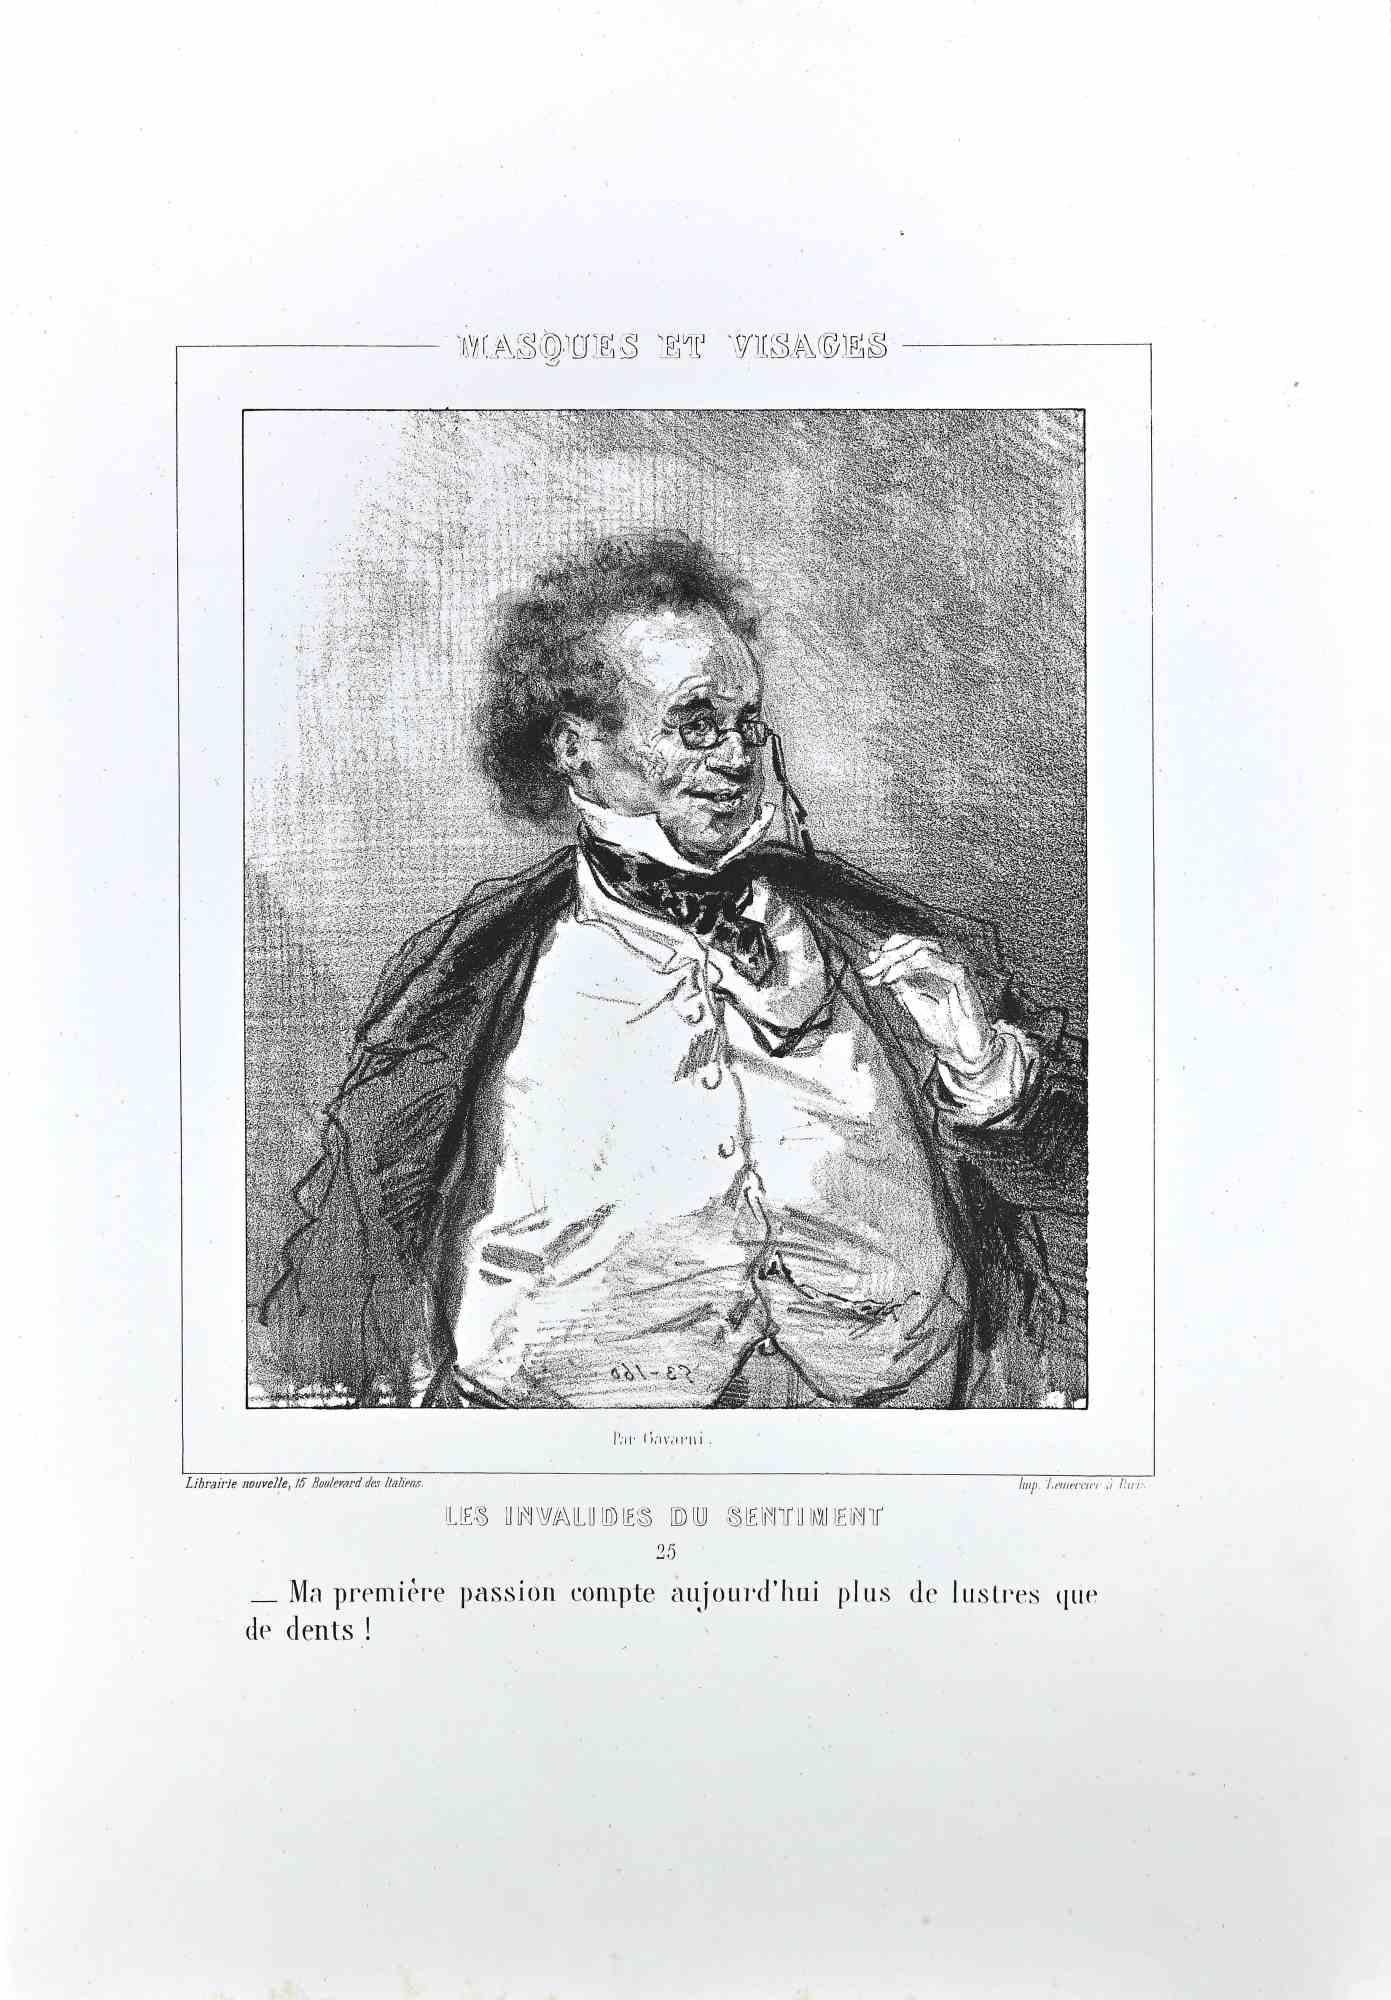 Les Invalides du Sentiment ist eine Lithographie auf elfenbeinfarbenem Papier, die von dem französischen Zeichner Paul Gavarni (alias Guillaume Sulpice Chevalier Gavarni, 1804-1866) Mitte des 19.

Aus der Serie der "Masques et Visages". Auf der